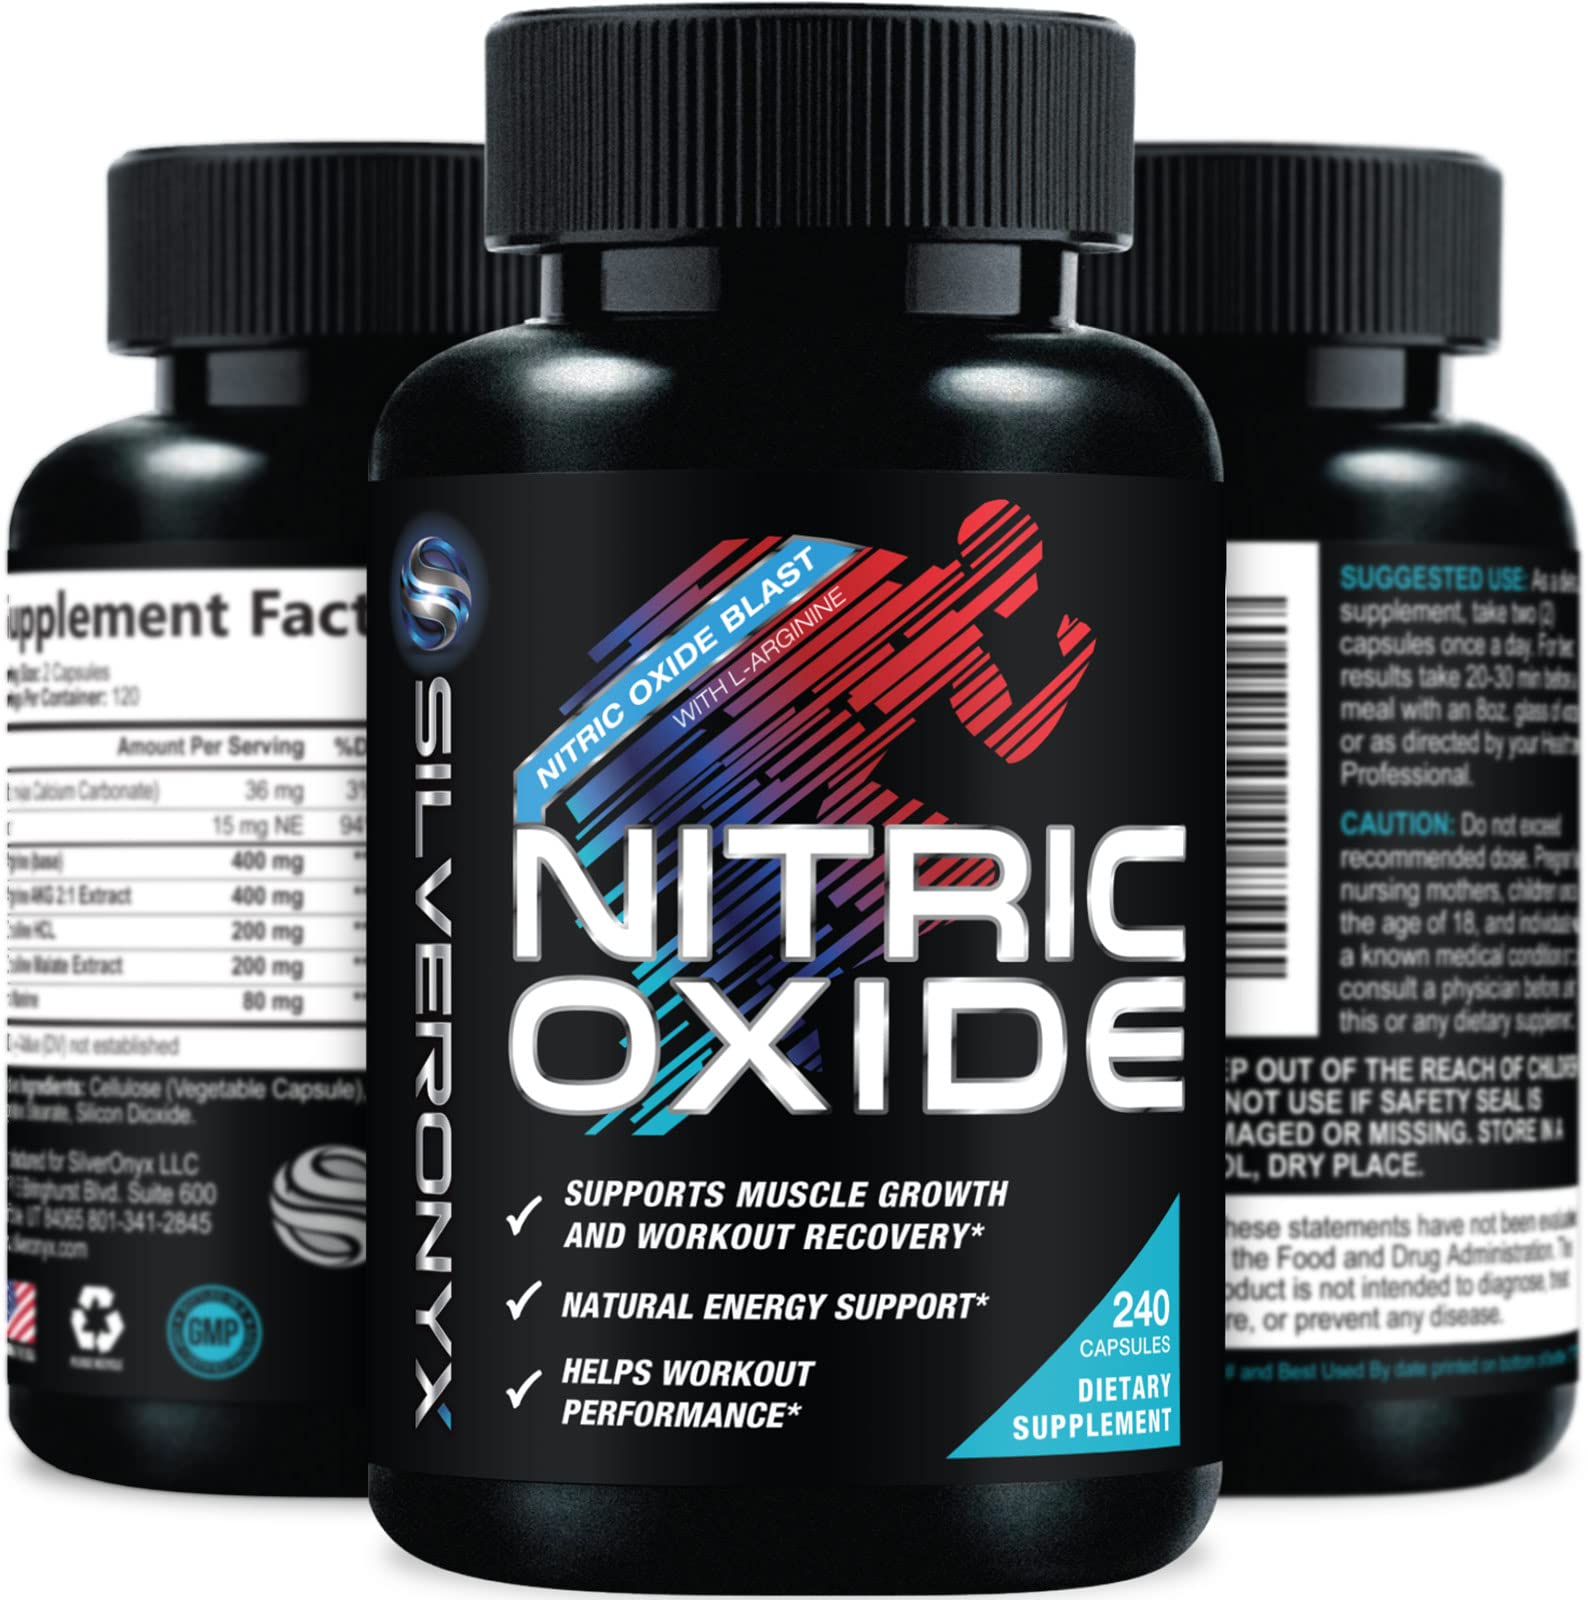 Dangle oprejst fjols Top 13 Best Nitric Oxide Supplements | Buoy